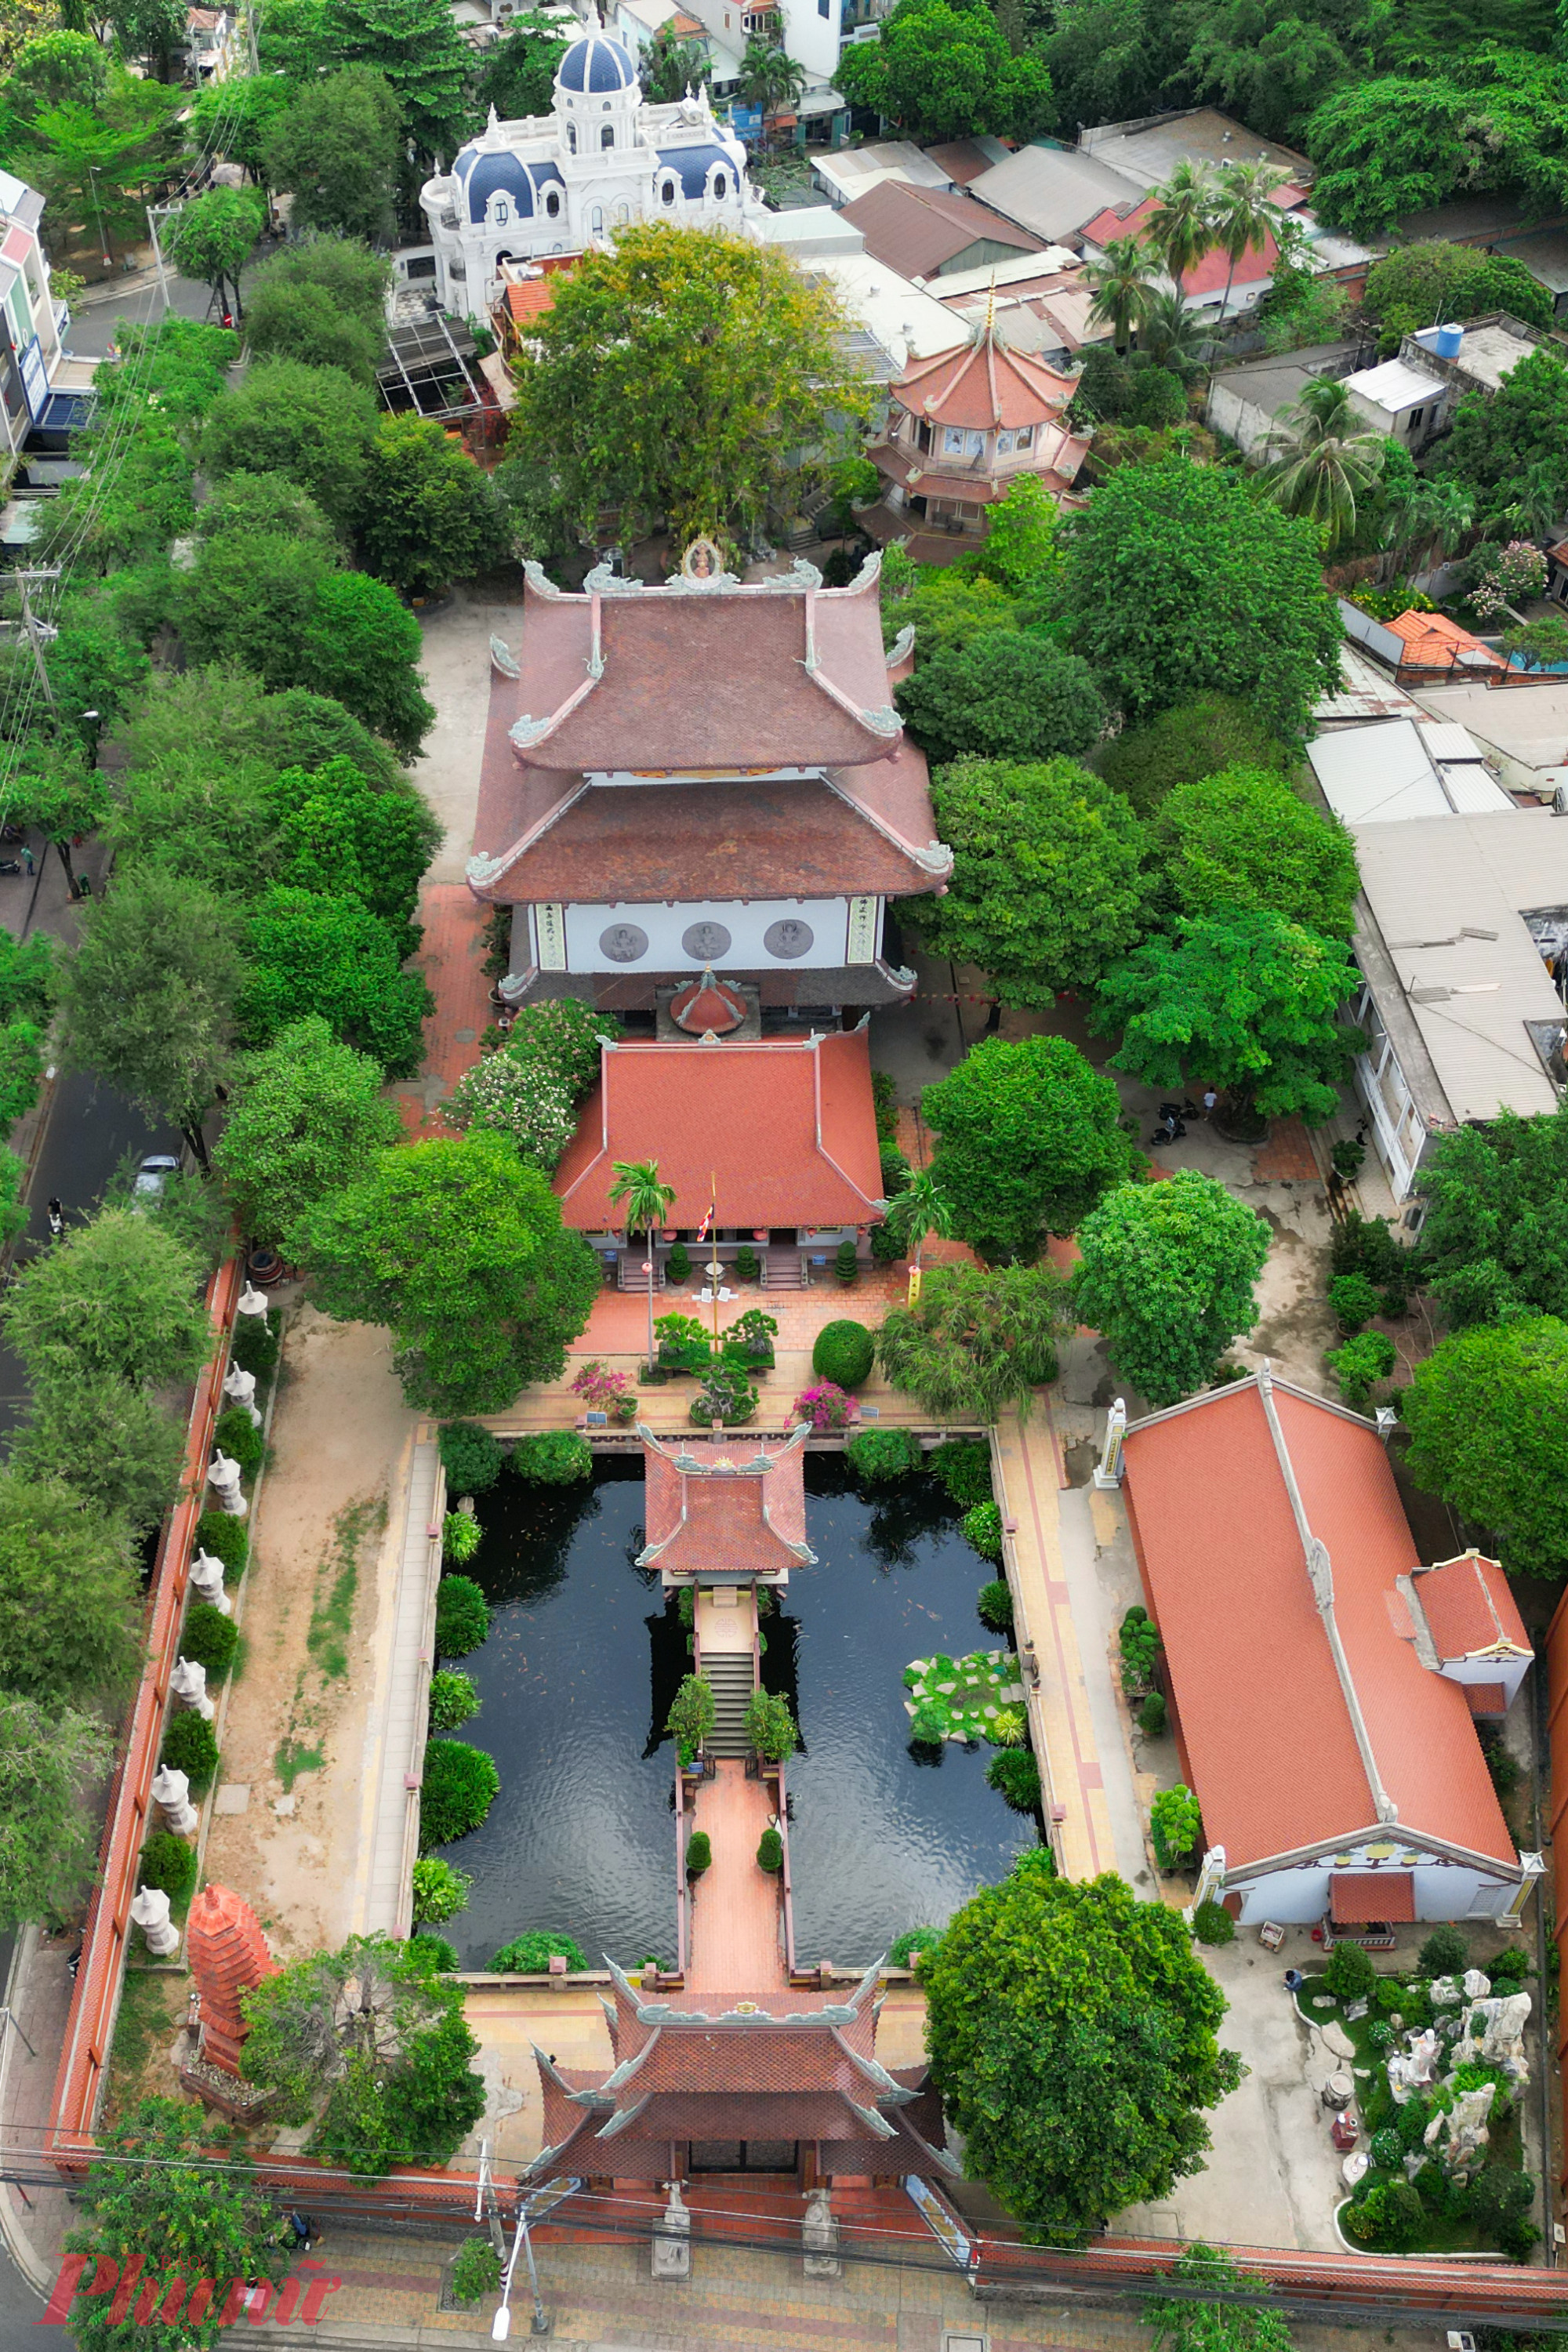 Ngôi chùa mang tên Nam Thiên Nhất Trụ - chùa Một Cột được xây dựng năm 1958 bởi Hòa thượng Thích Trí Dũng. Chùa rộng khoảng một hecta, tọa lạc trên đường Đặng Văn Bi, quận Thủ Đức, TP HCM.